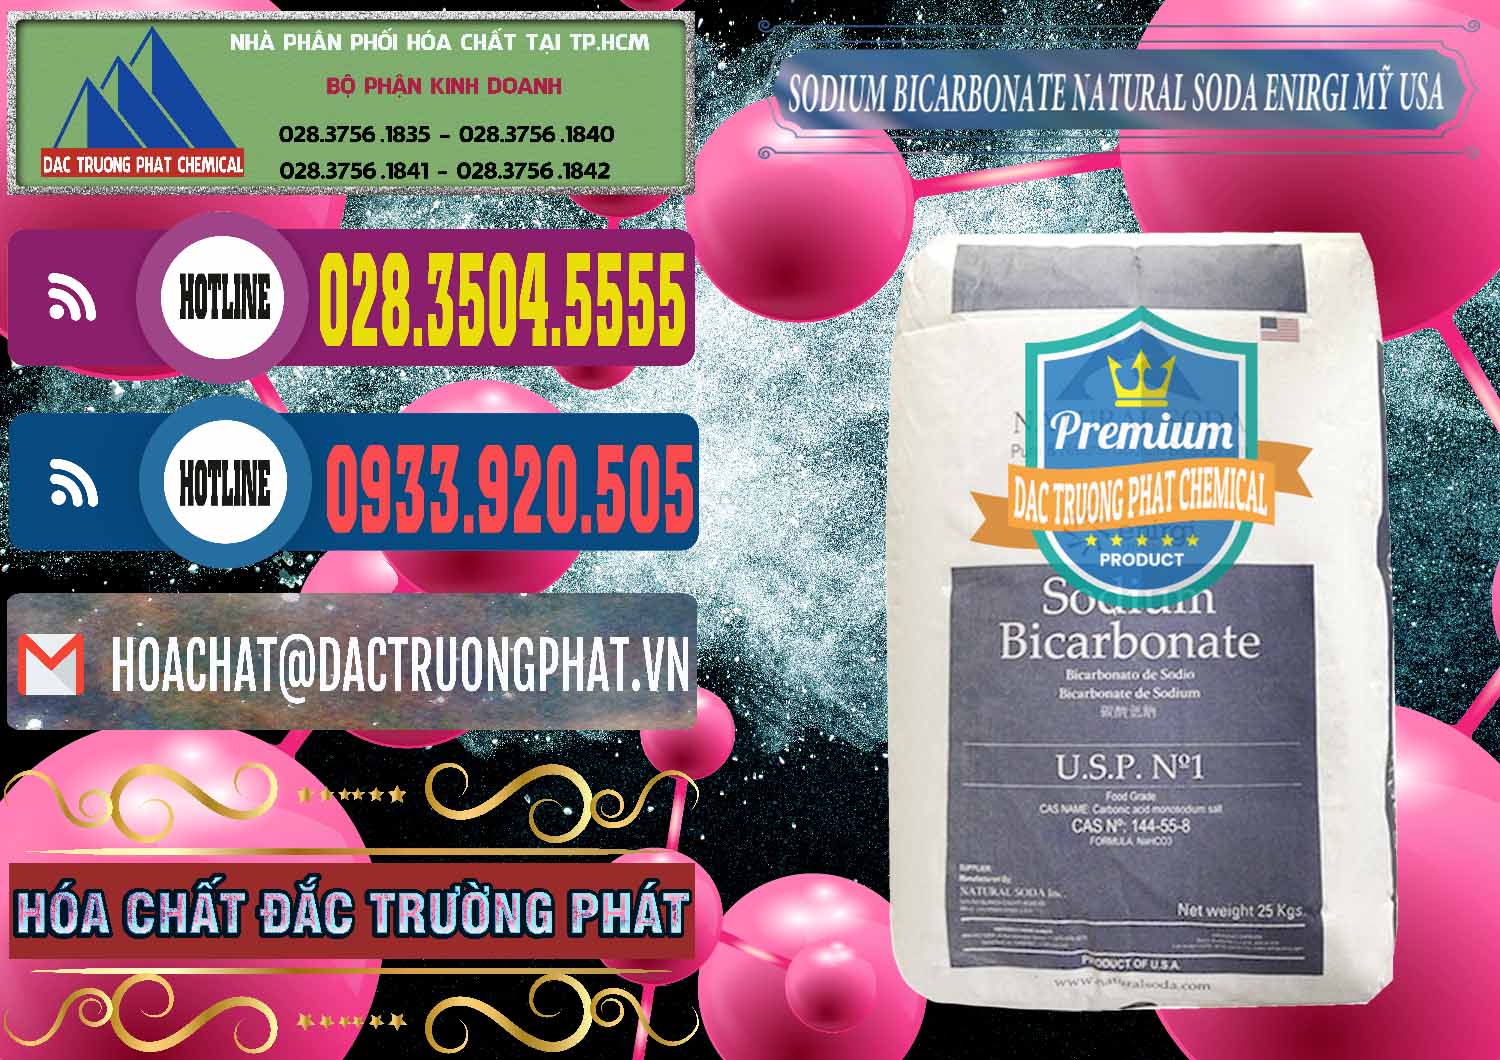 Đơn vị kinh doanh - bán Sodium Bicarbonate – Bicar NaHCO3 Food Grade Natural Soda Enirgi Mỹ USA - 0257 - Nơi cung cấp - nhập khẩu hóa chất tại TP.HCM - muabanhoachat.com.vn